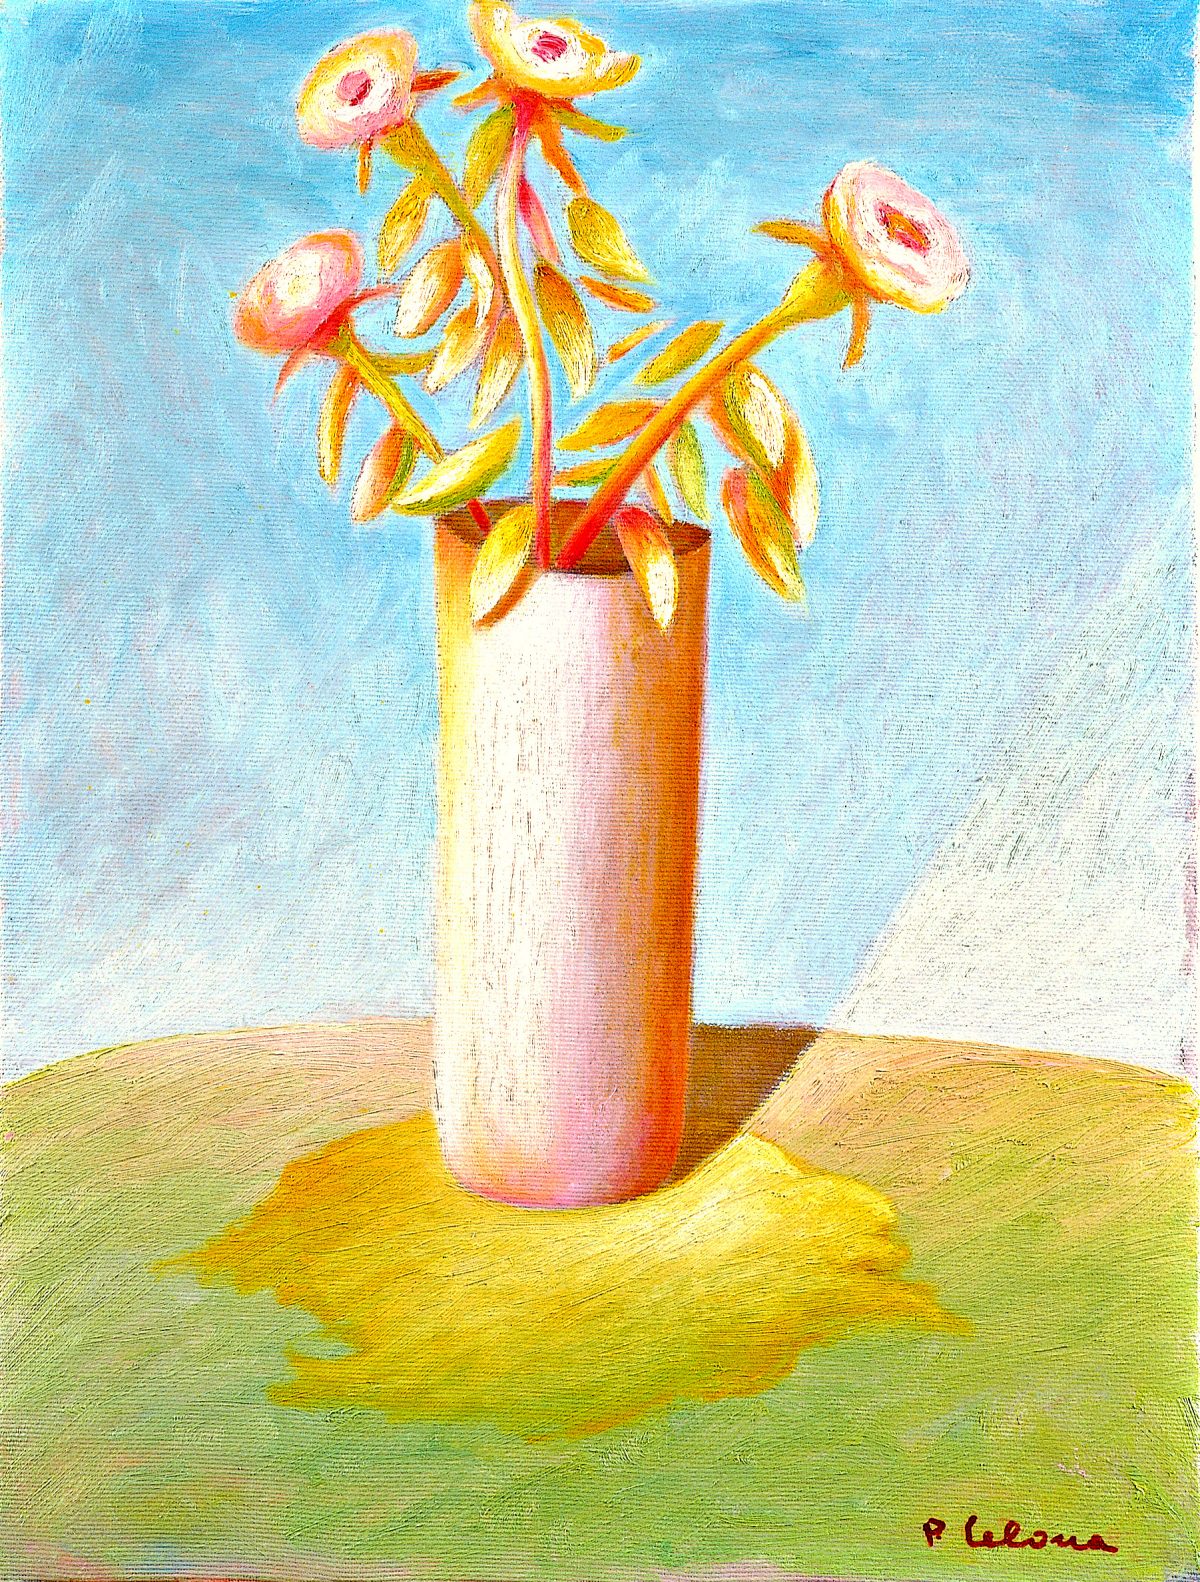 Vaso e fiori, ca. 1990
Olio su tela
40 x 30 cm,
NMV109